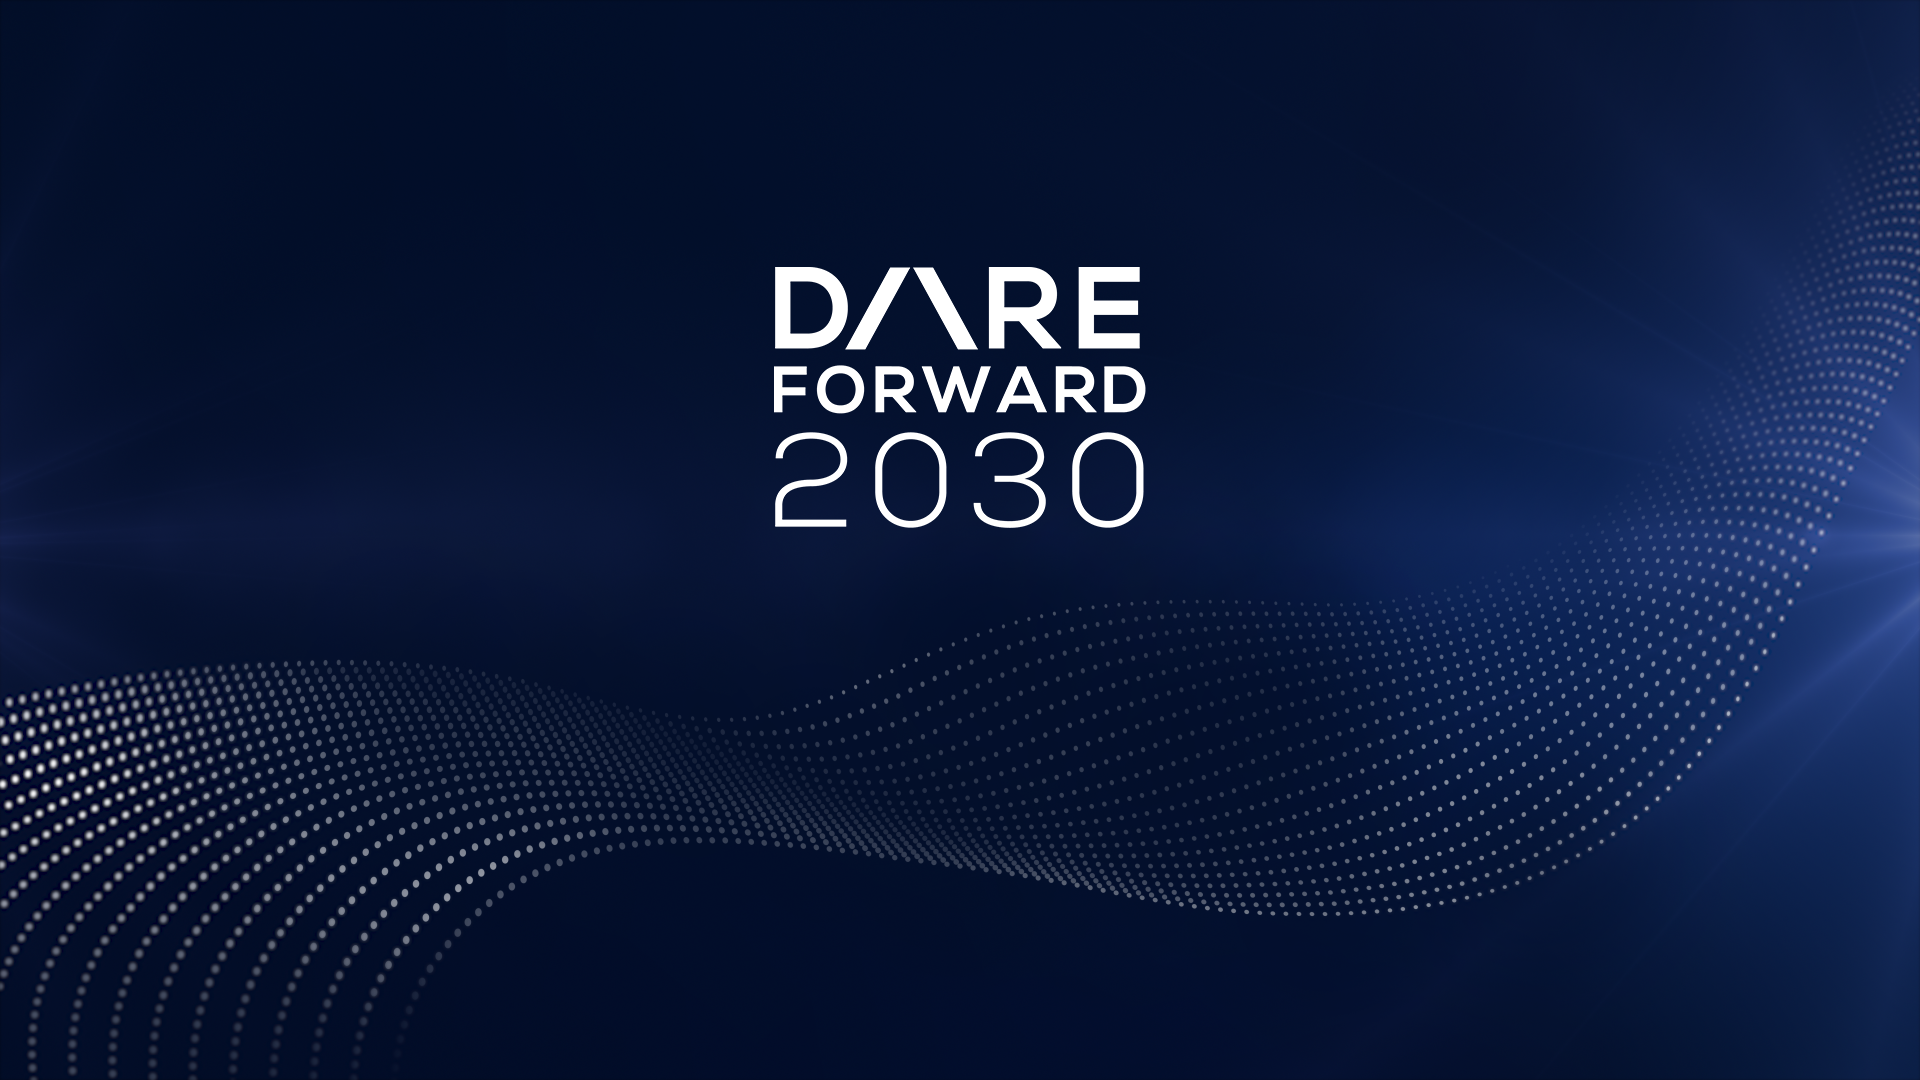 immagine di dare forward 2030